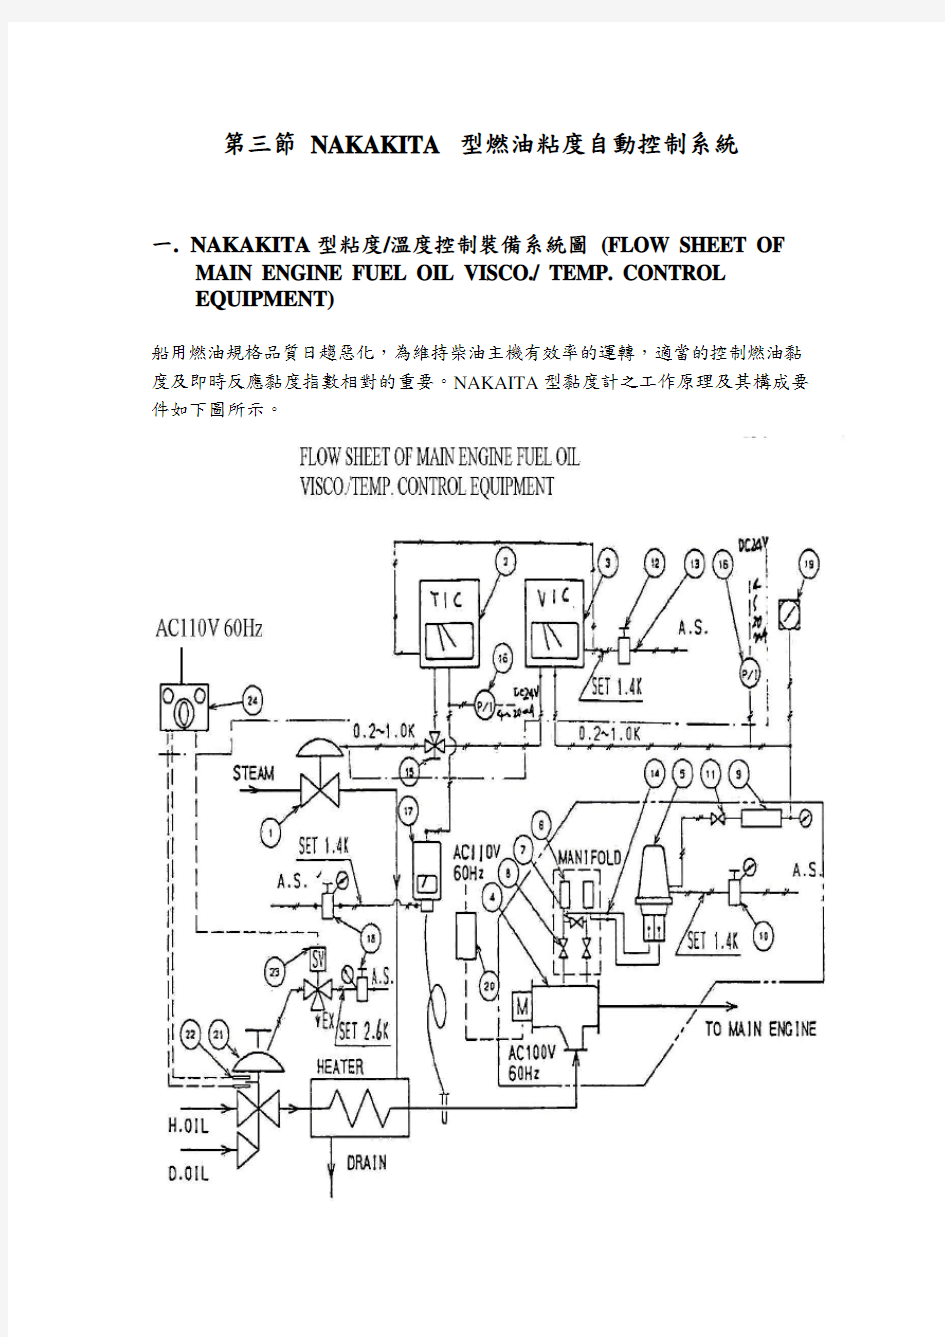 船舶自动控第四章  第三节NAKAKITA 型燃油粘度自动控制系统